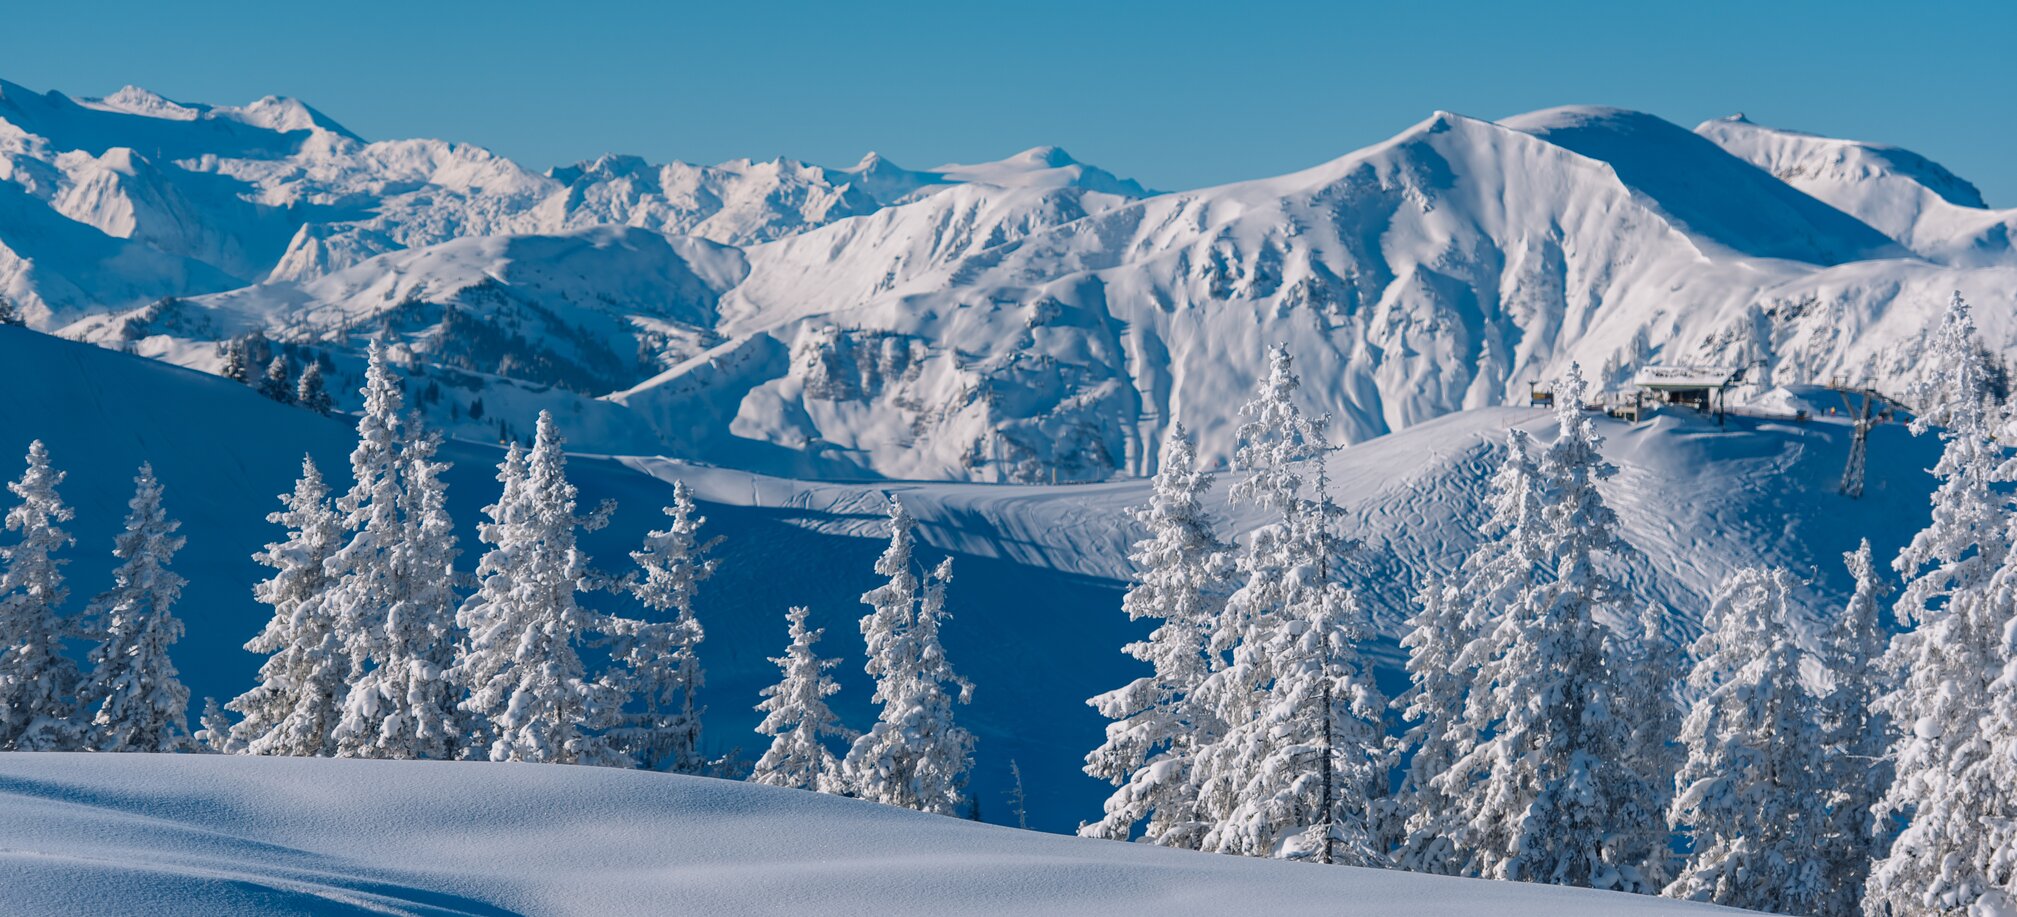 Enjoying beautiful alpine landscapes while skiing in Ski amadé